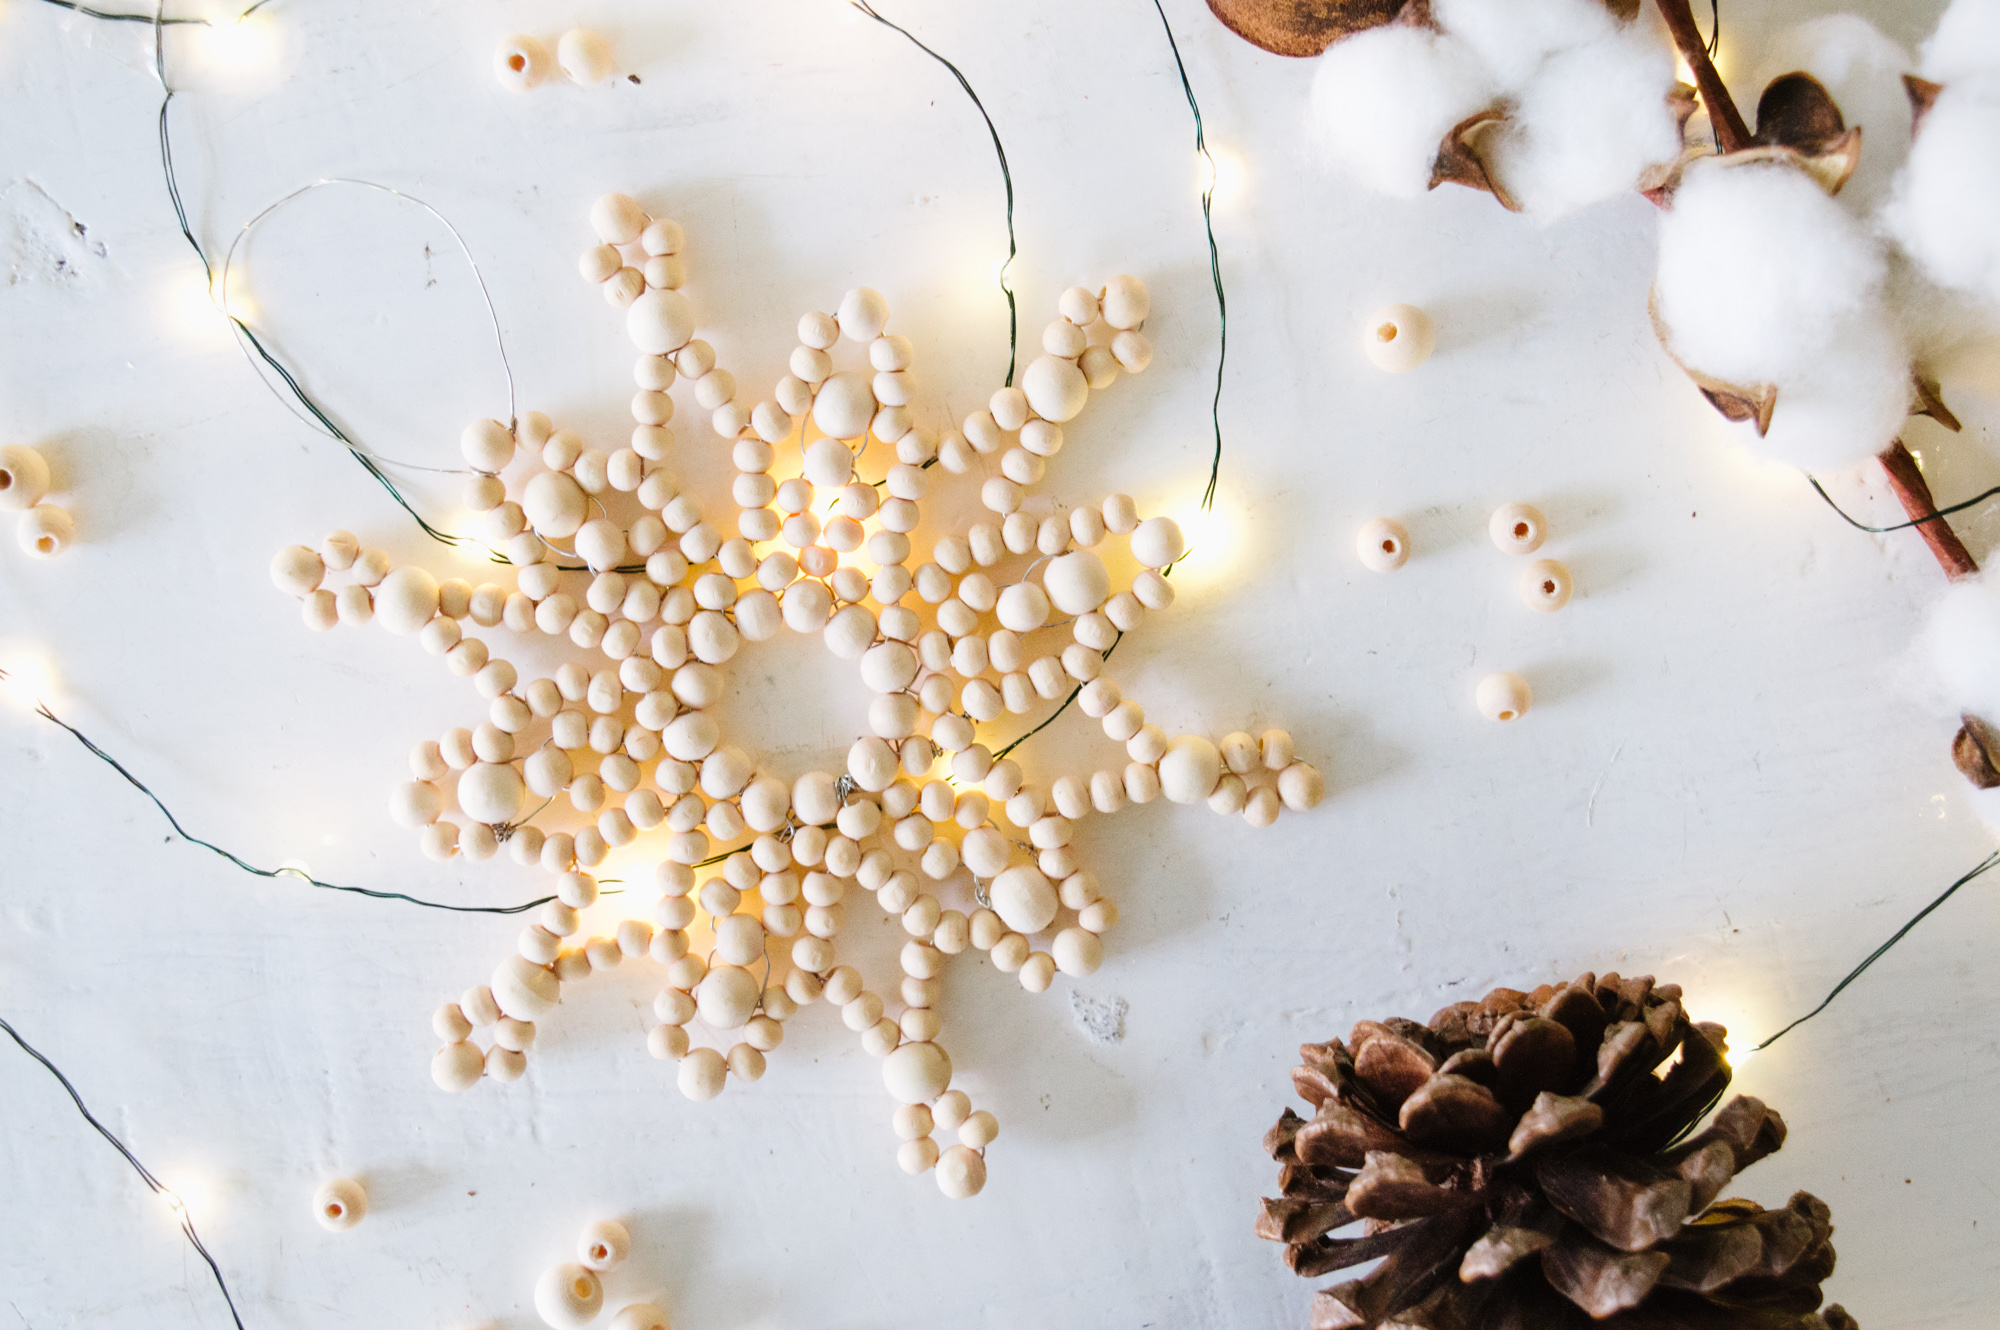 DIY Beaded Snowflake Ornament 